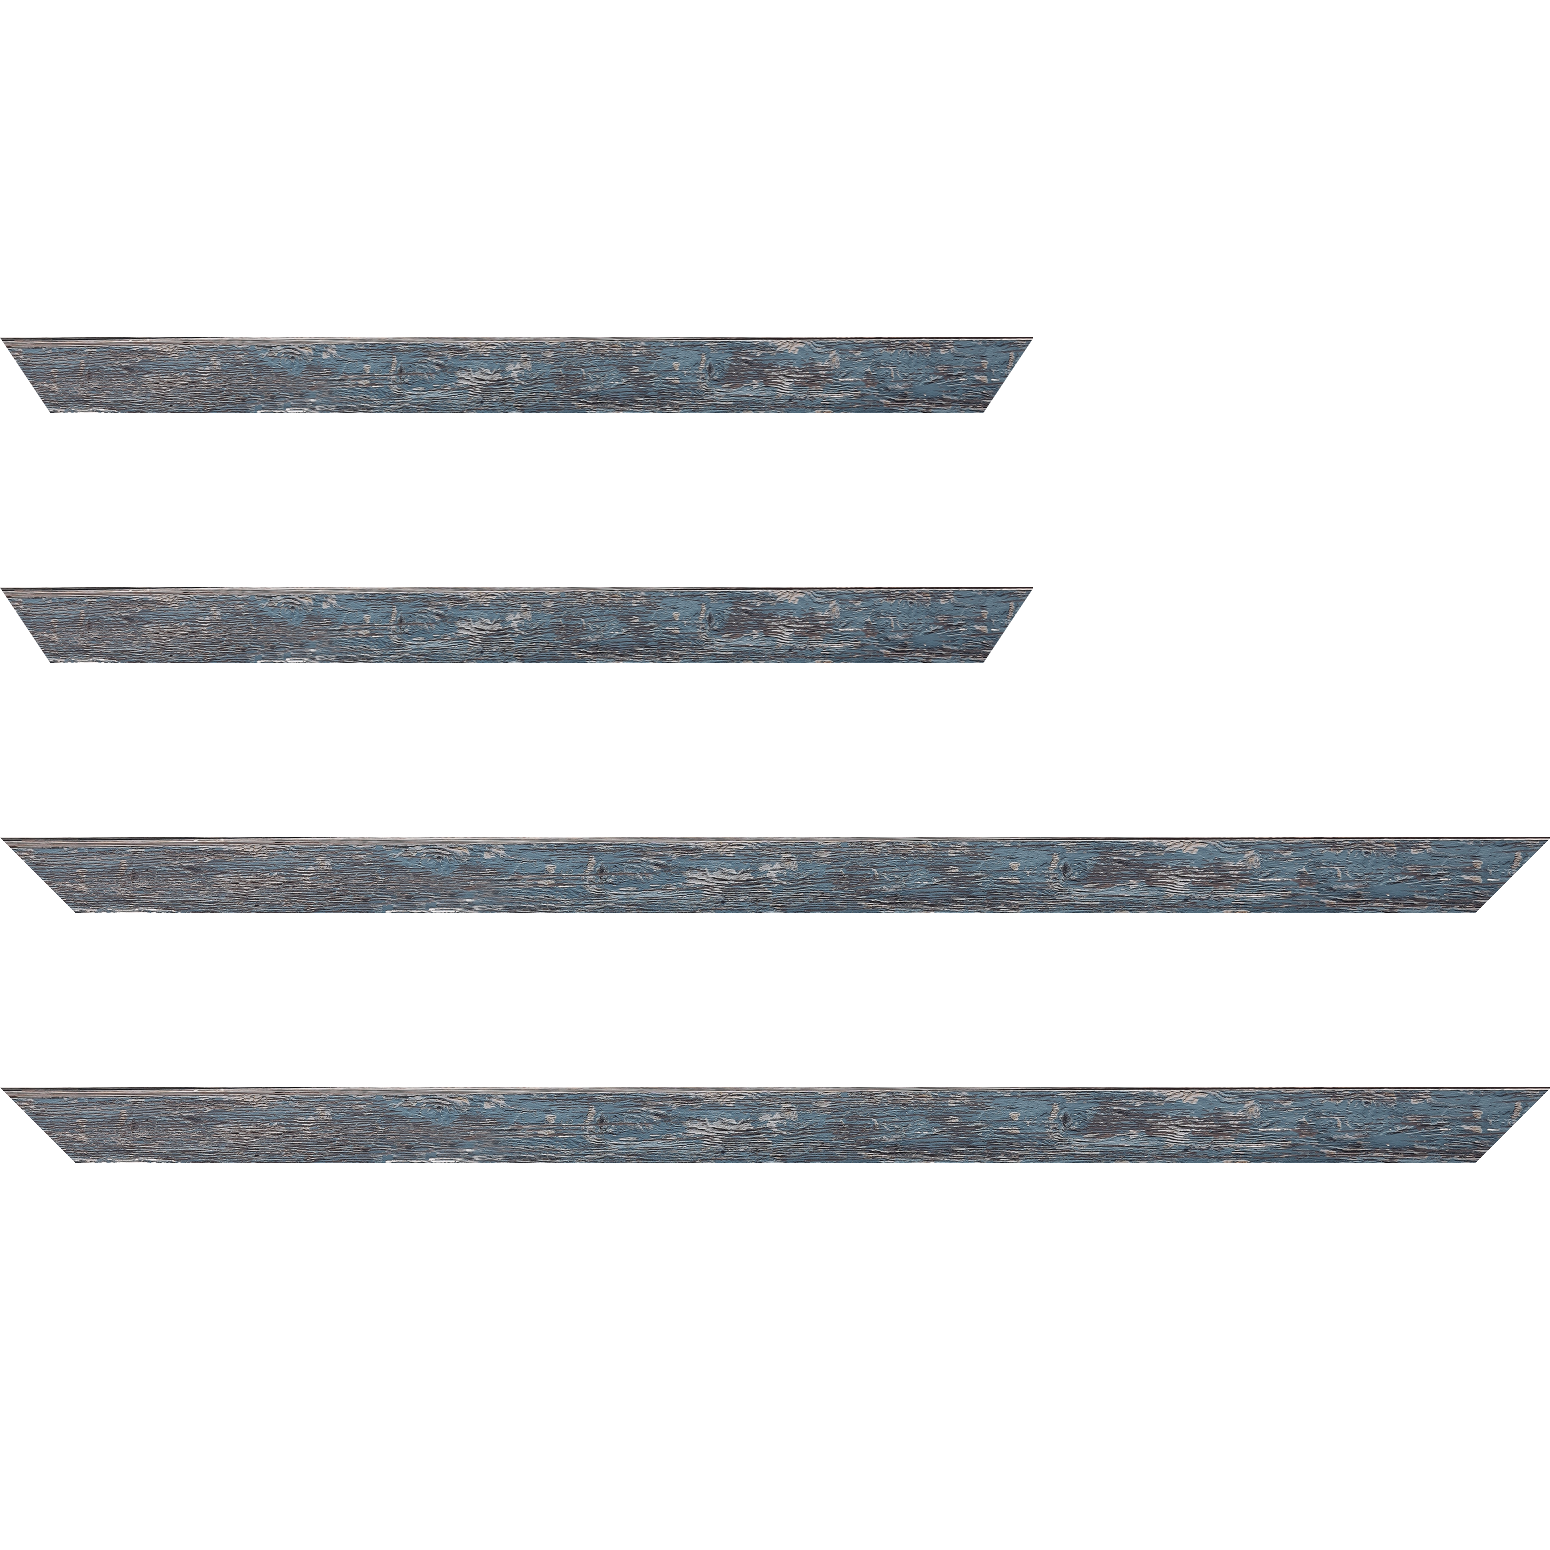 Baguette bois profil arrondi en pente plongeant largeur 2.4cm couleur bleu pétrole finition veinée, reflet argenté